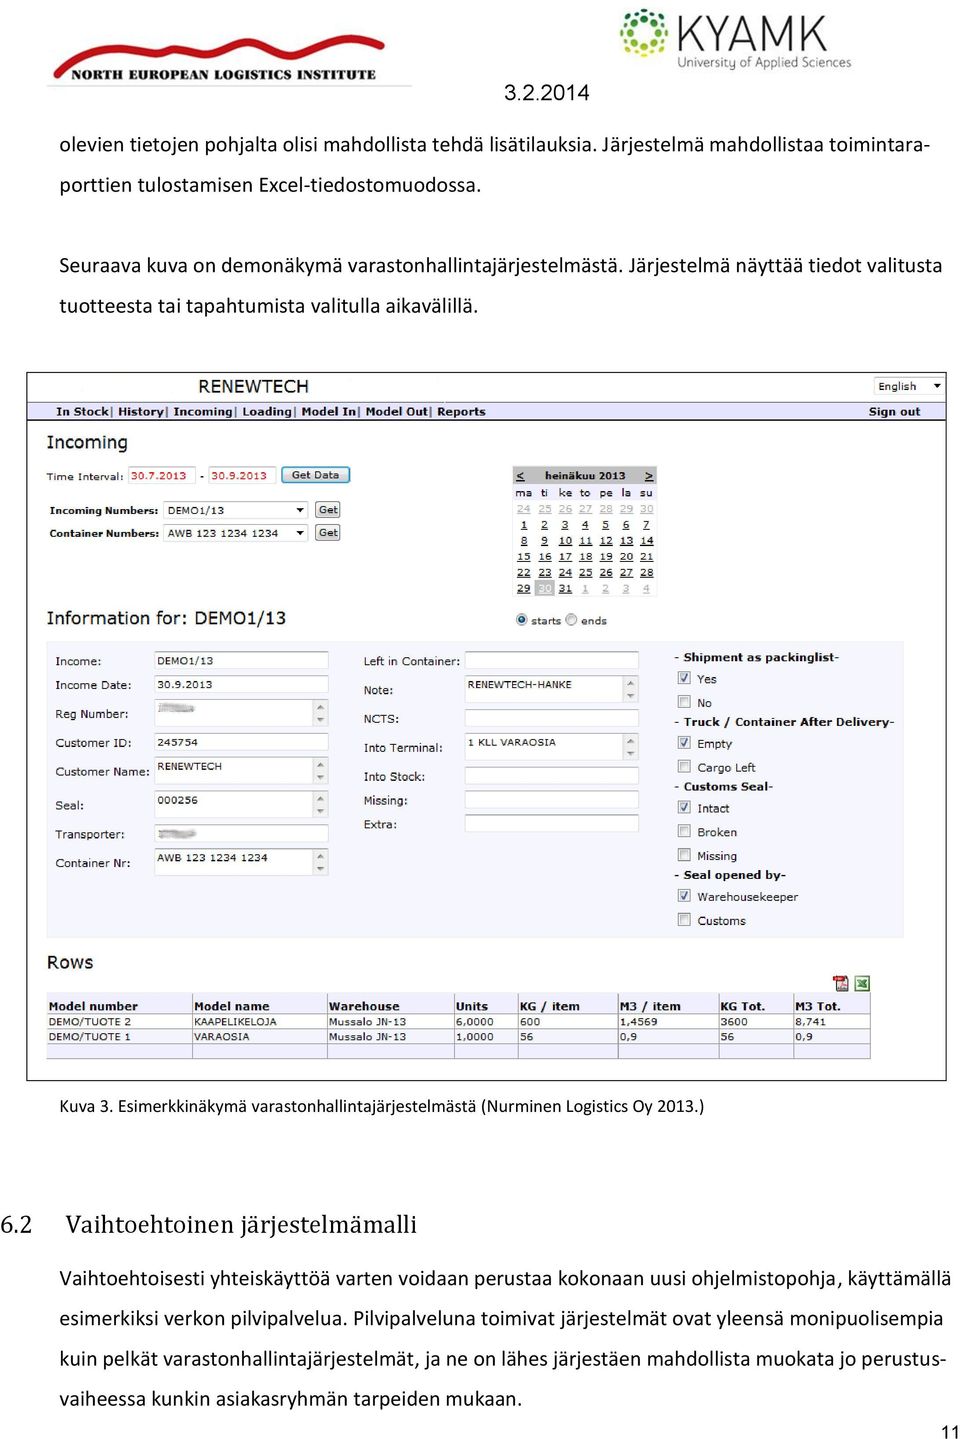 Esimerkkinäkymä varastonhallintajärjestelmästä (Nurminen Logistics Oy 2013.) 6.